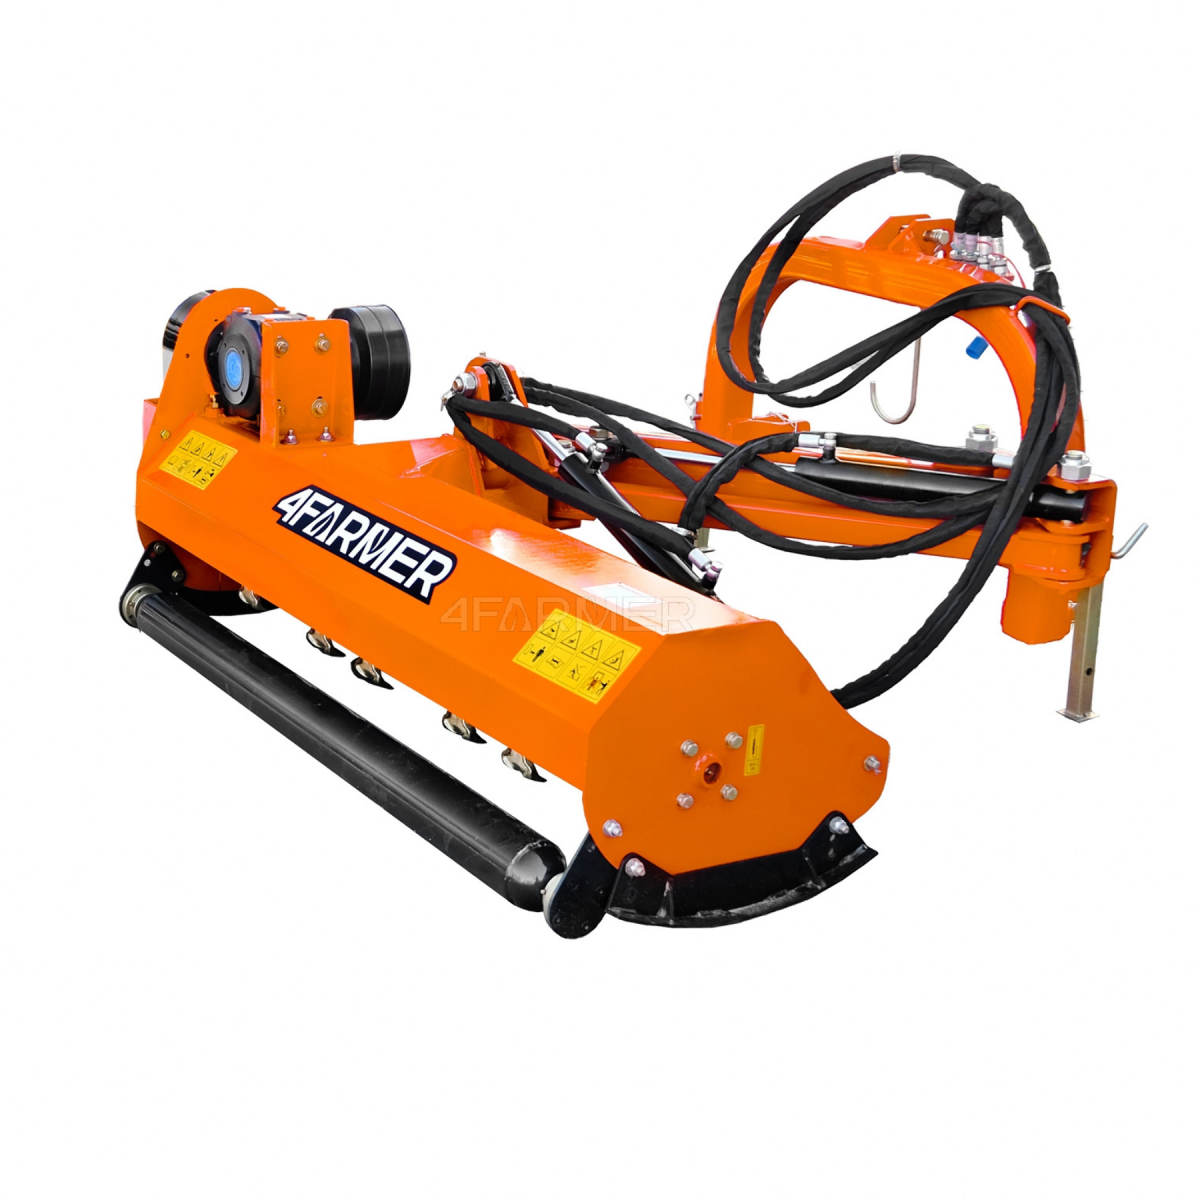 Trituradora de martillos trasera AGL 145 4FARMER - naranja